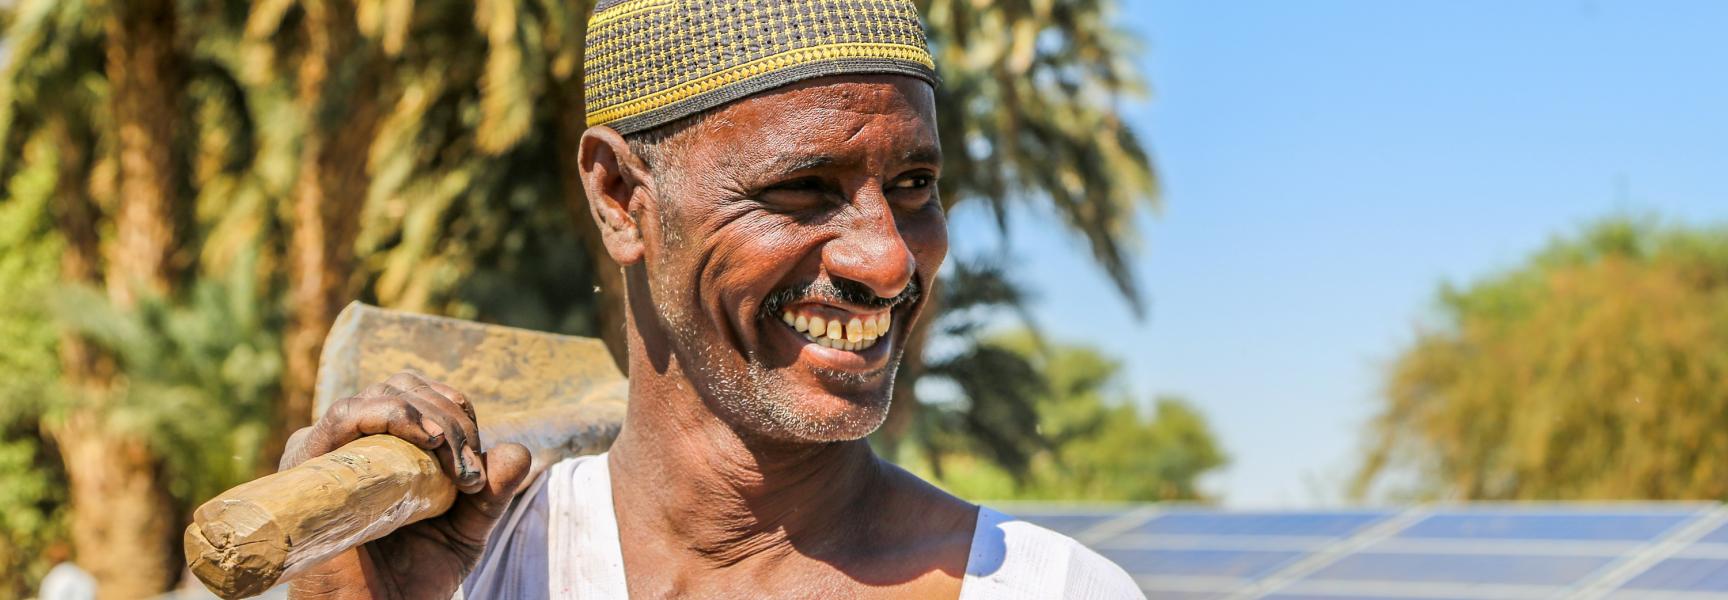 Hombre usando energía solar para agricultura en Sudán